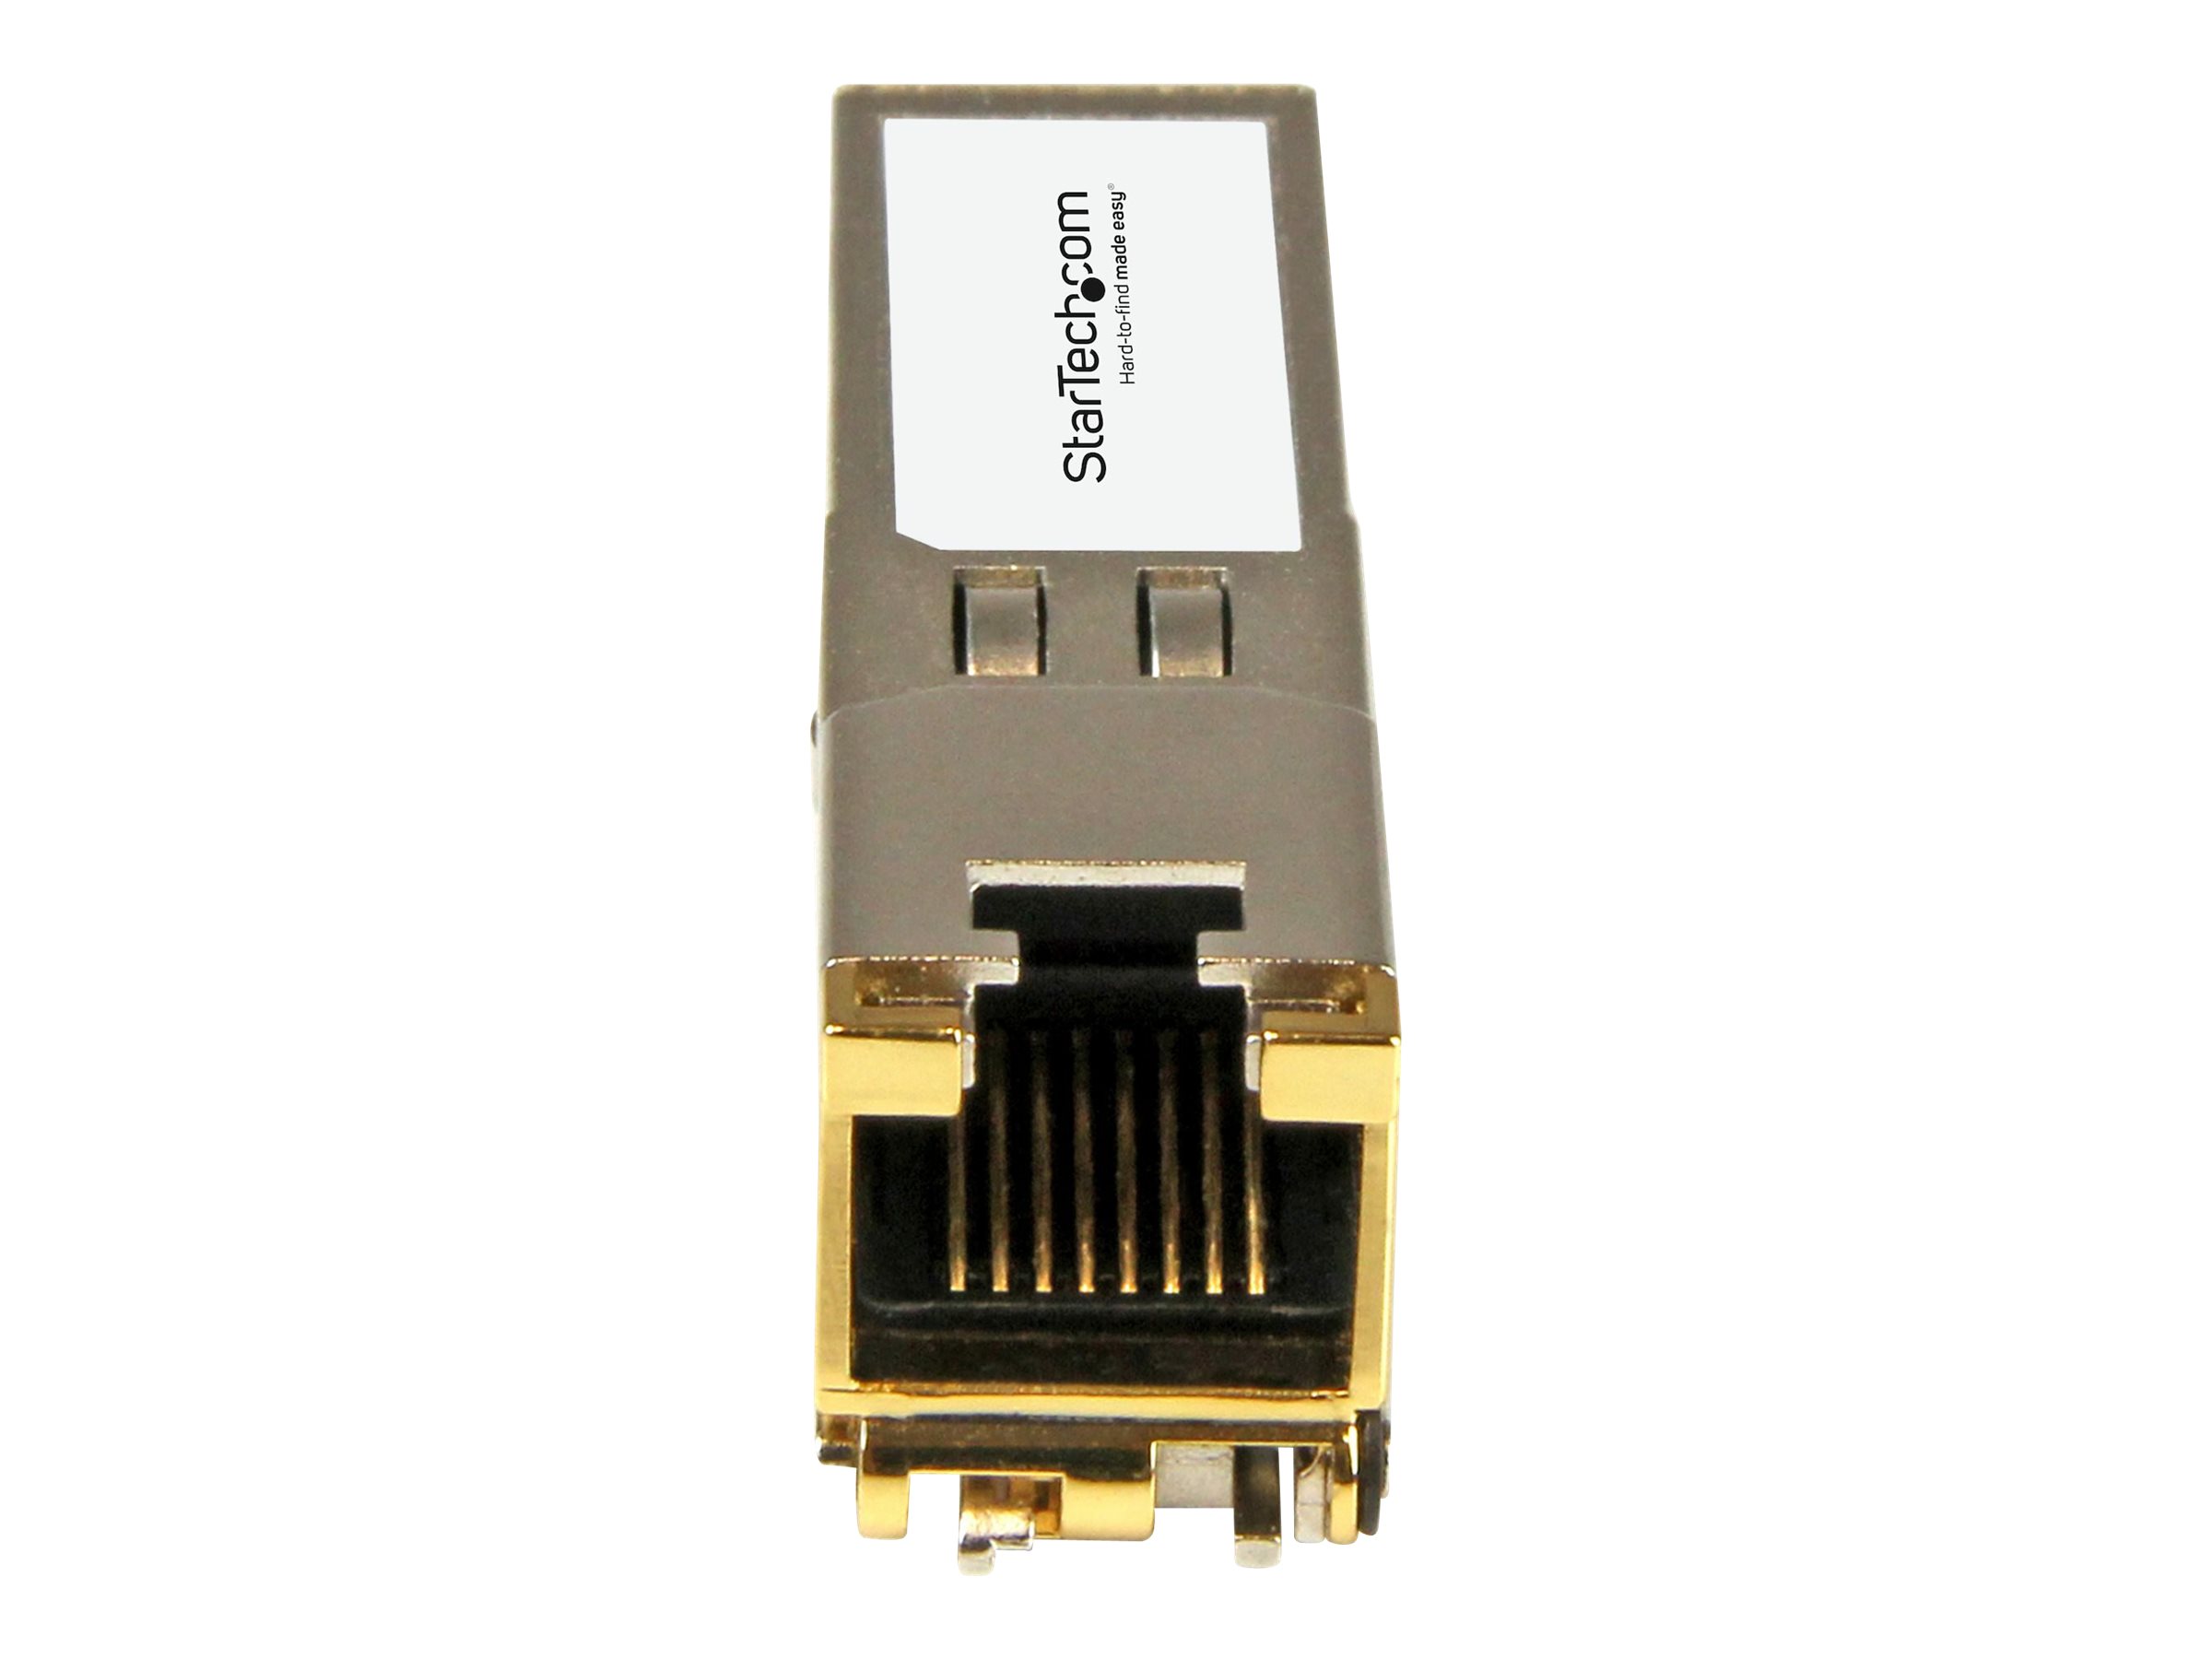 StarTech.com Module de transceiver SFP compatible Palo Alto Networks GC - 10/100/1000Base-TX - Garantie a vie - 1 Gbps - 100 m (CG-ST) - Module transmetteur SFP (mini-GBIC) (équivalent à : Palo Alto Networks PAN-SFP-CG) - 1GbE - 1000Base-TX - RJ-45 - jusqu'à 100 m - CG-ST - Transmetteurs SFP